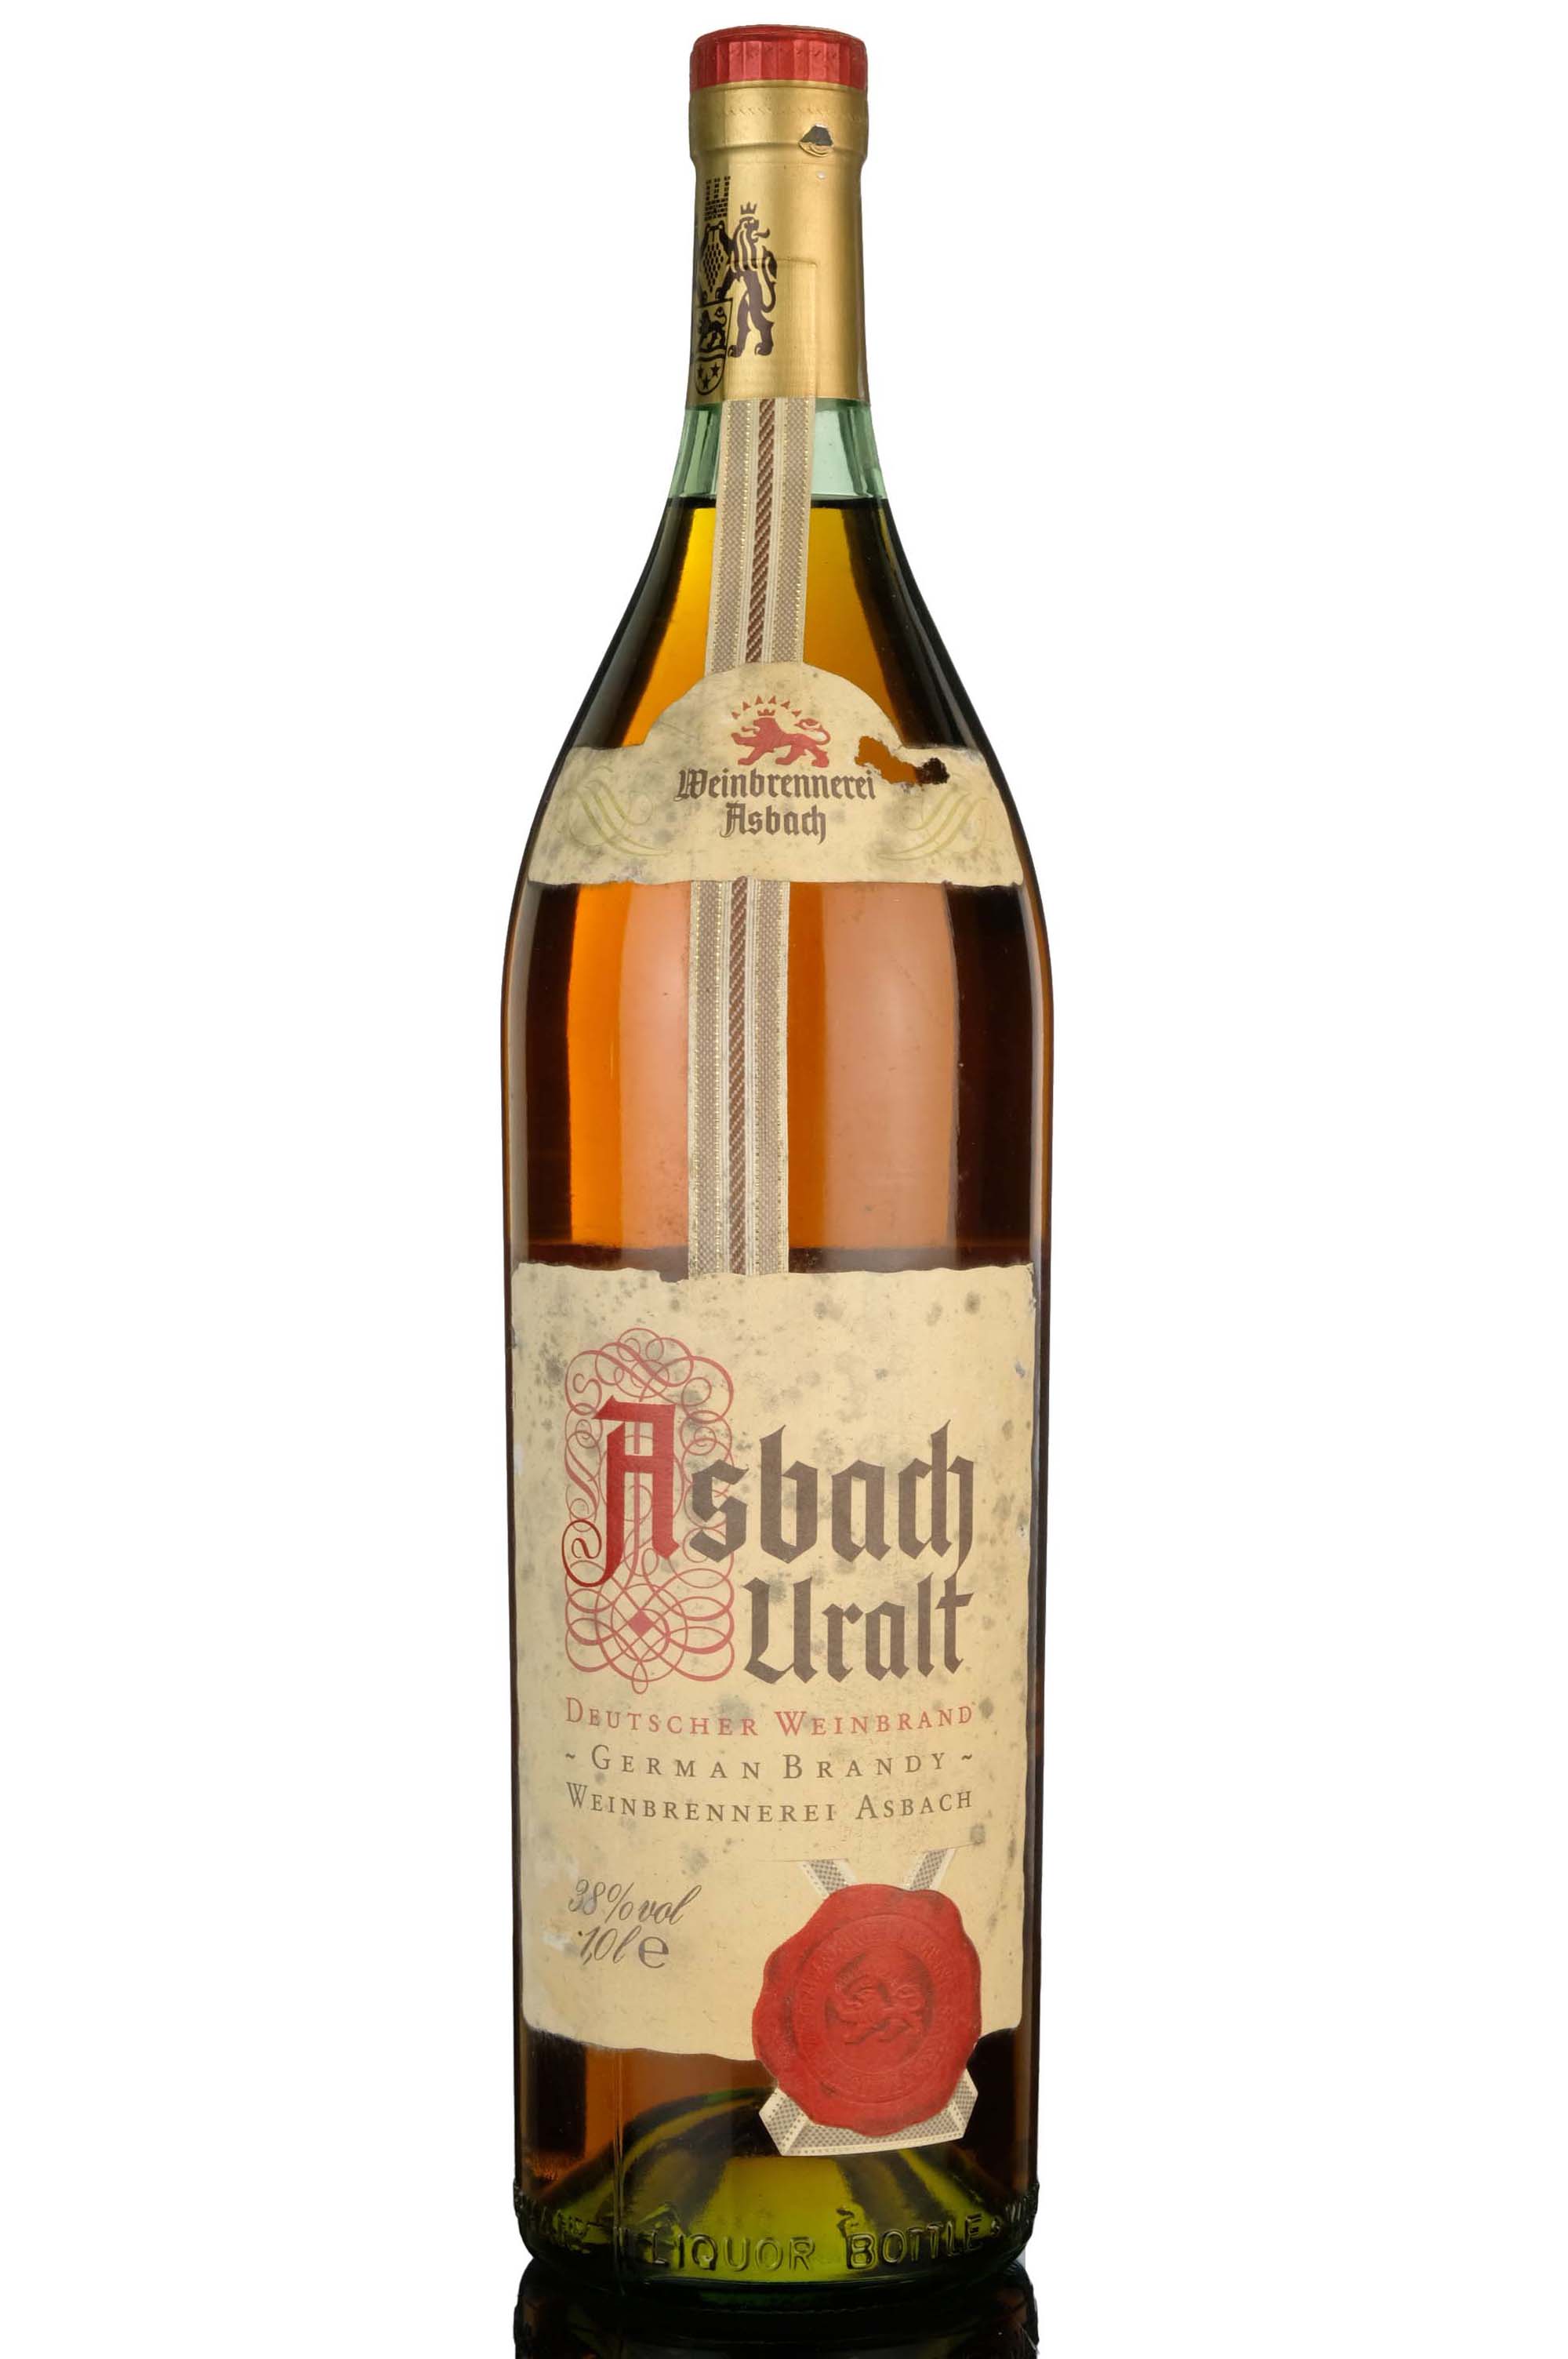 Asbach Uralt German Brandy - 1 Litre